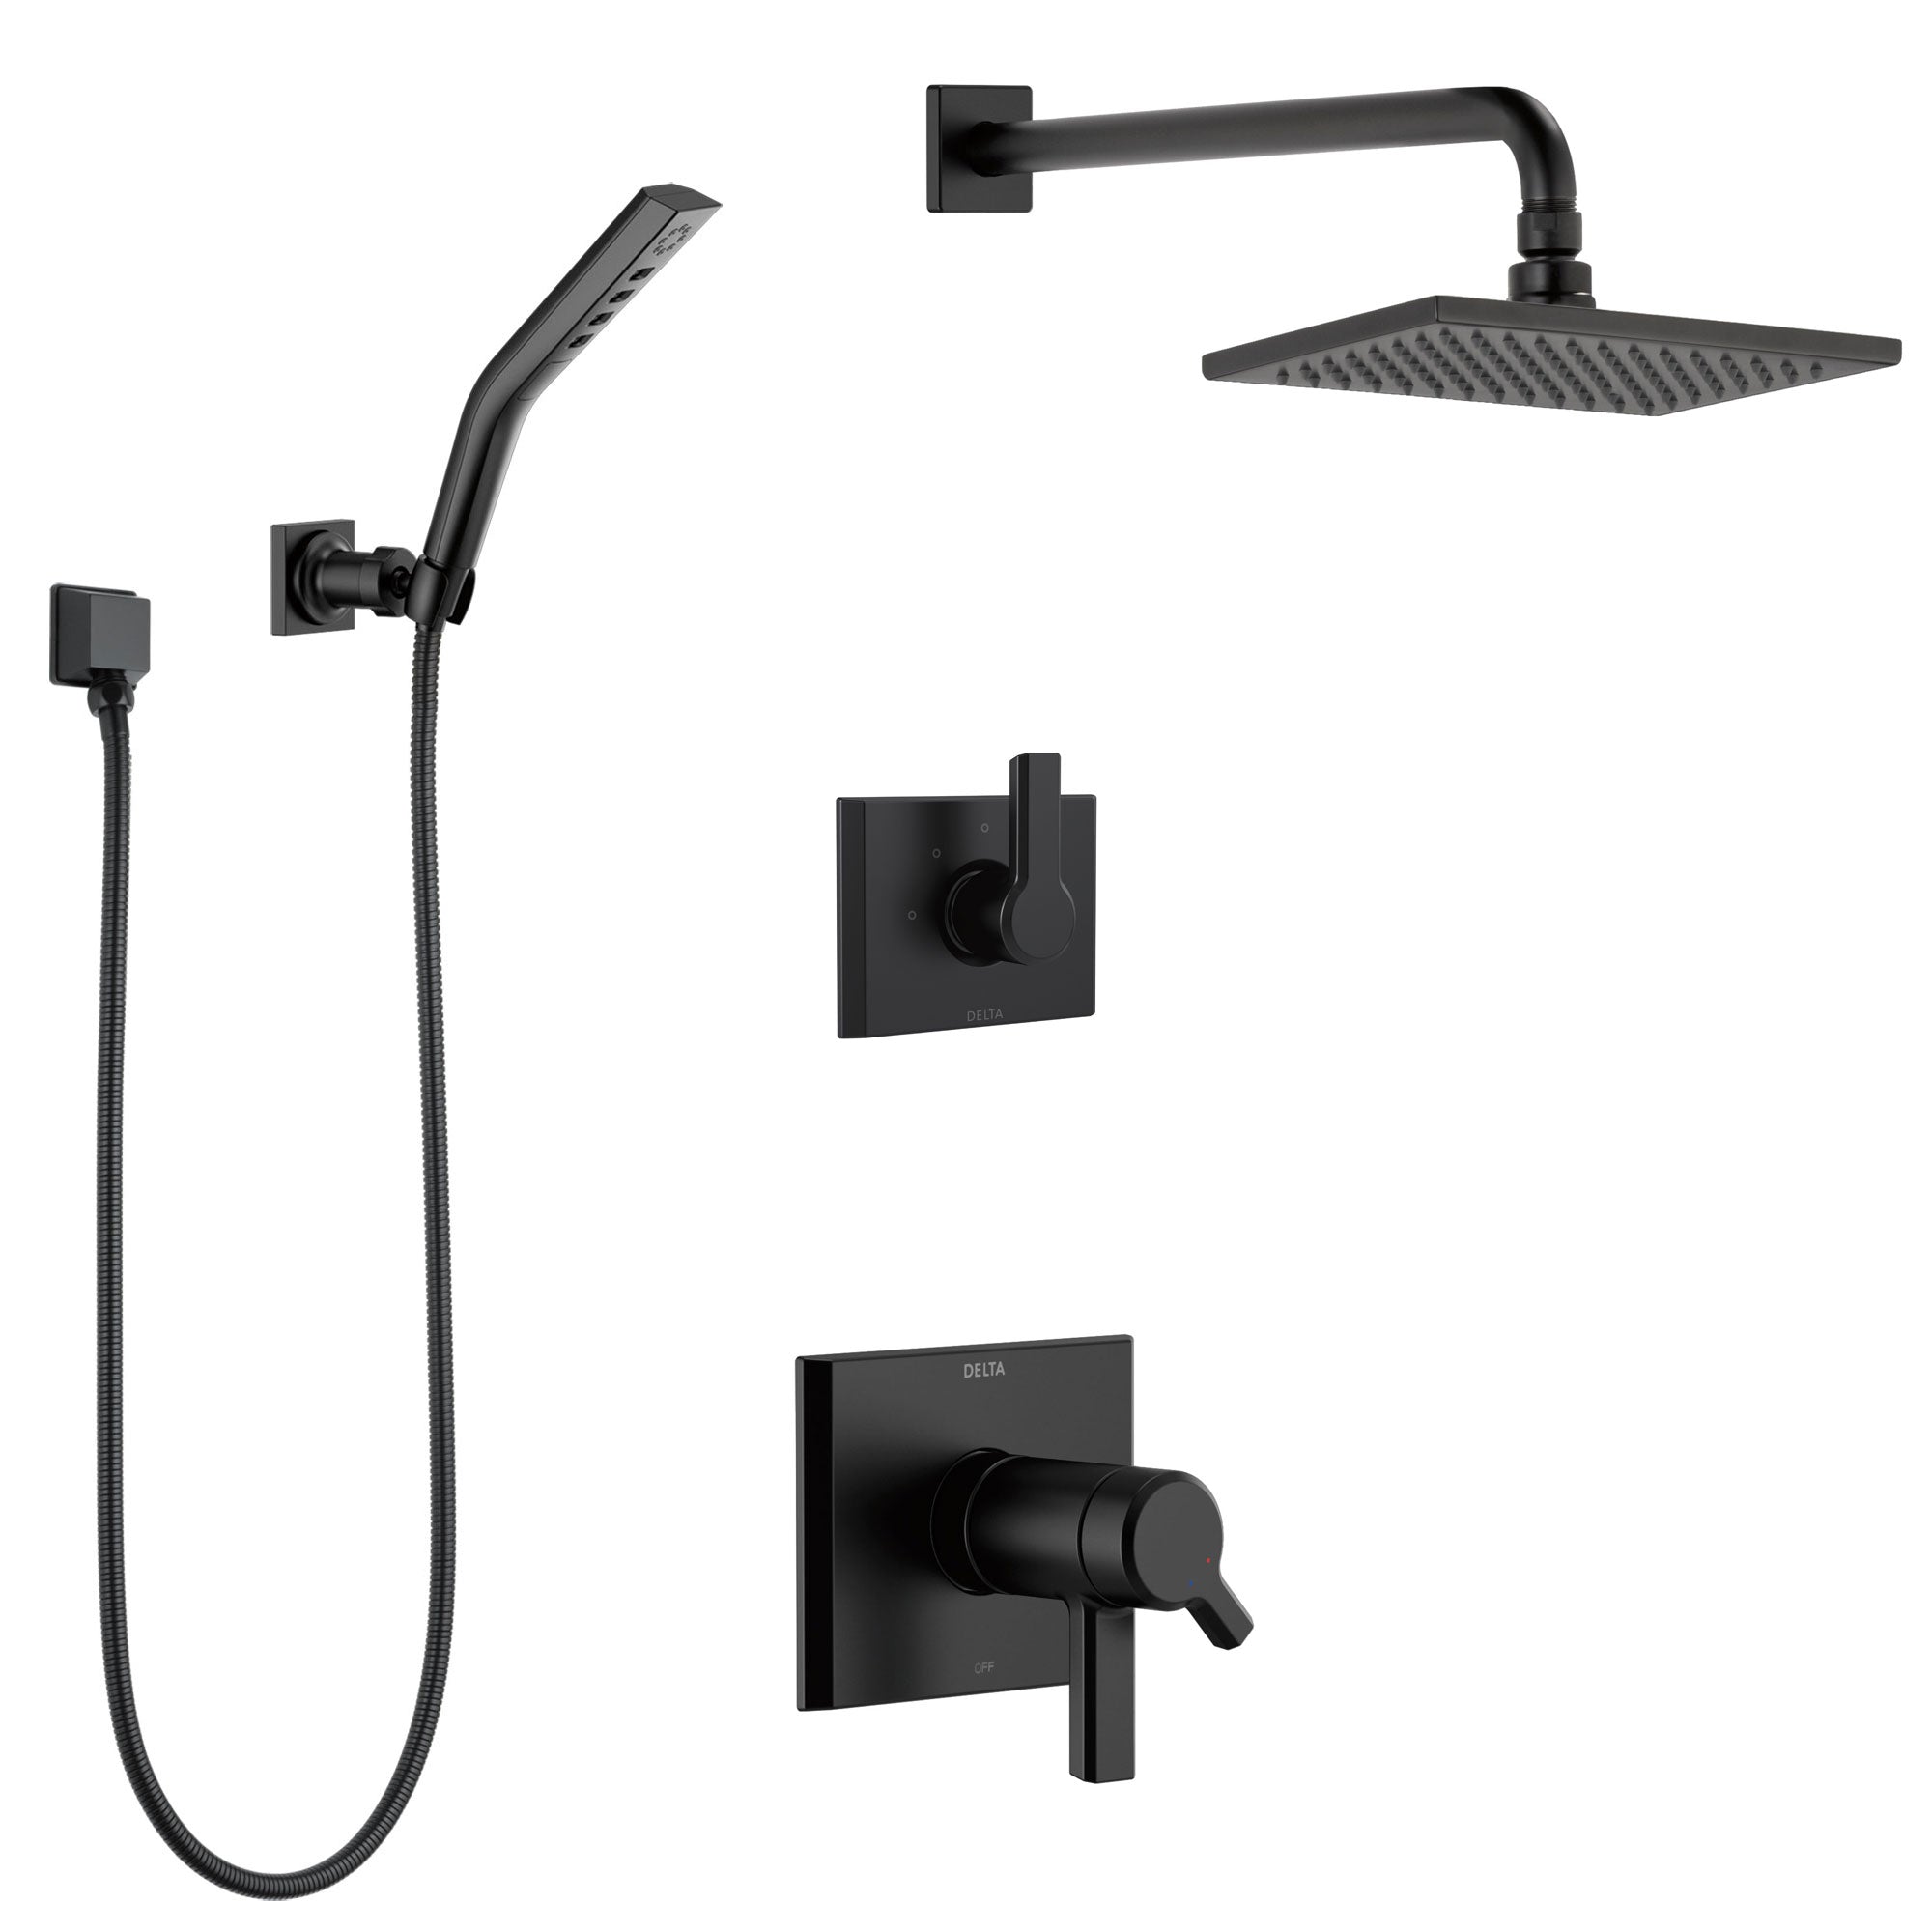 Delta Trinsic Matte Black Finish Shower System with Built-in Diverter, 